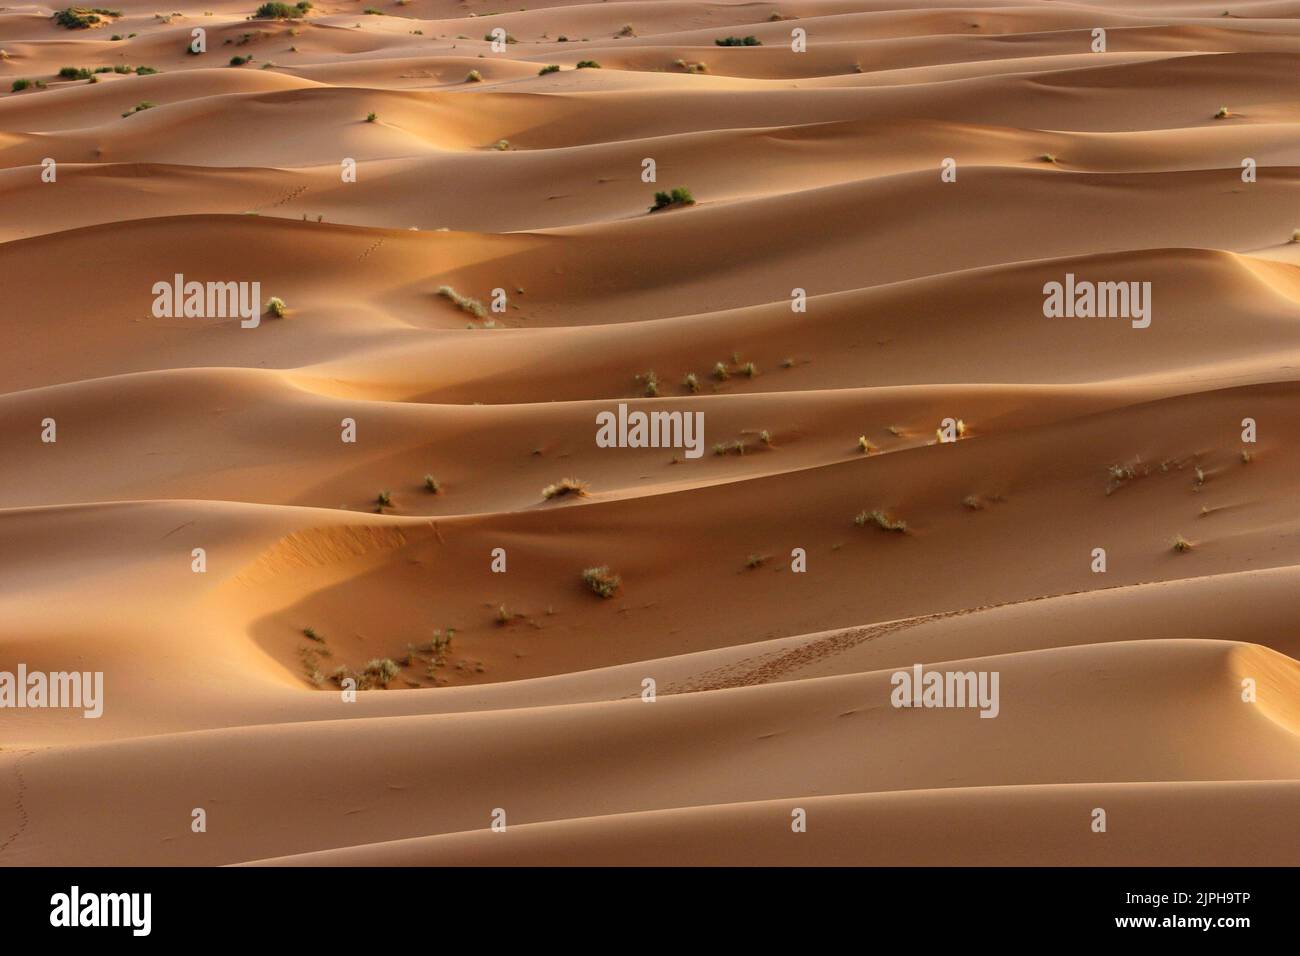 Sand dunes in the Sahara desert Stock Photo